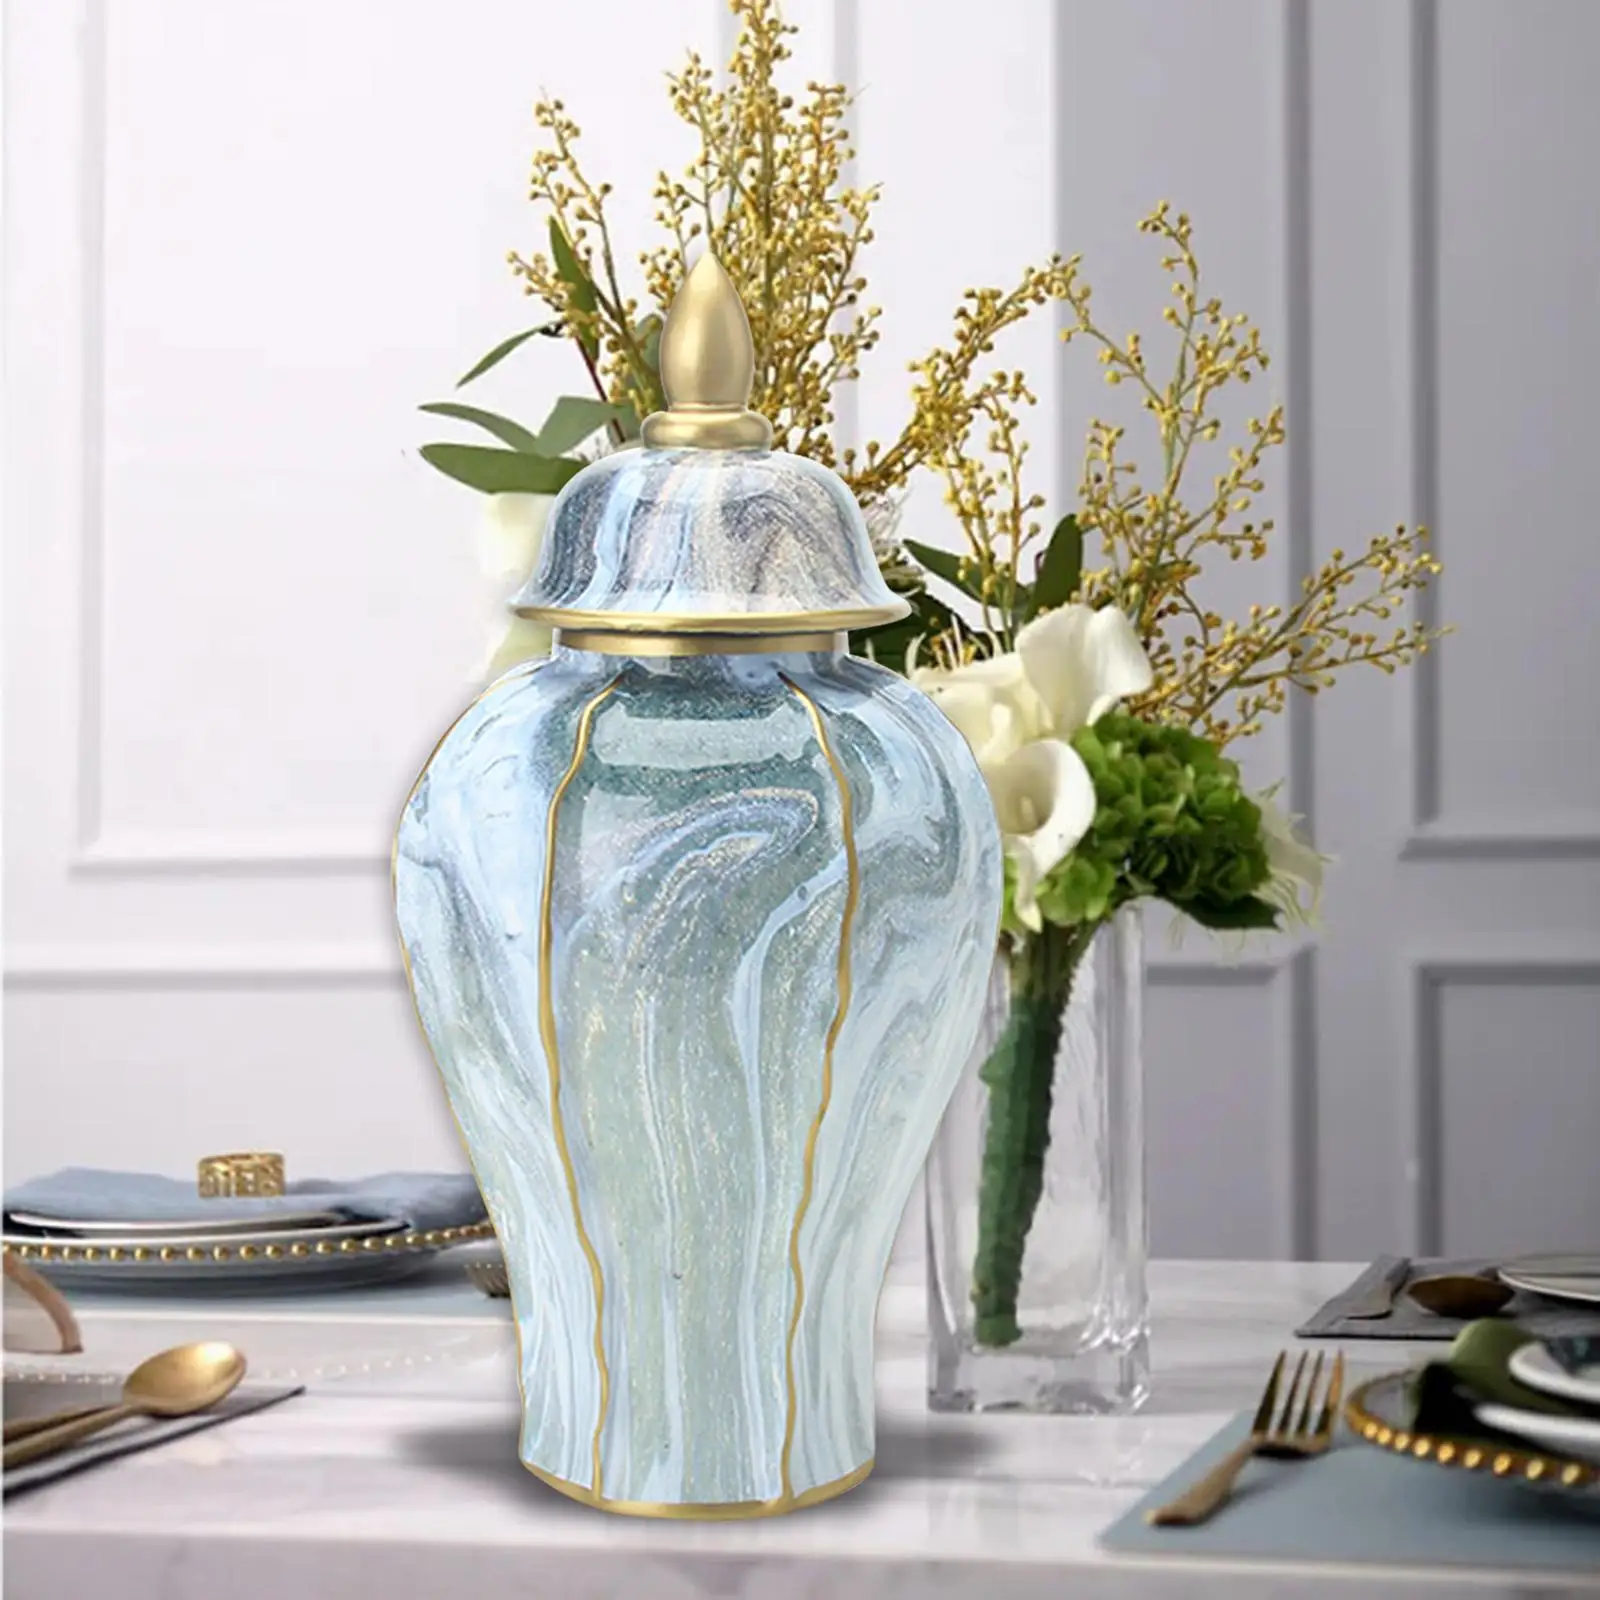 Porcelain Ginger Jar Storage Jar Traditional Handicraft Ceramic Flower Vase